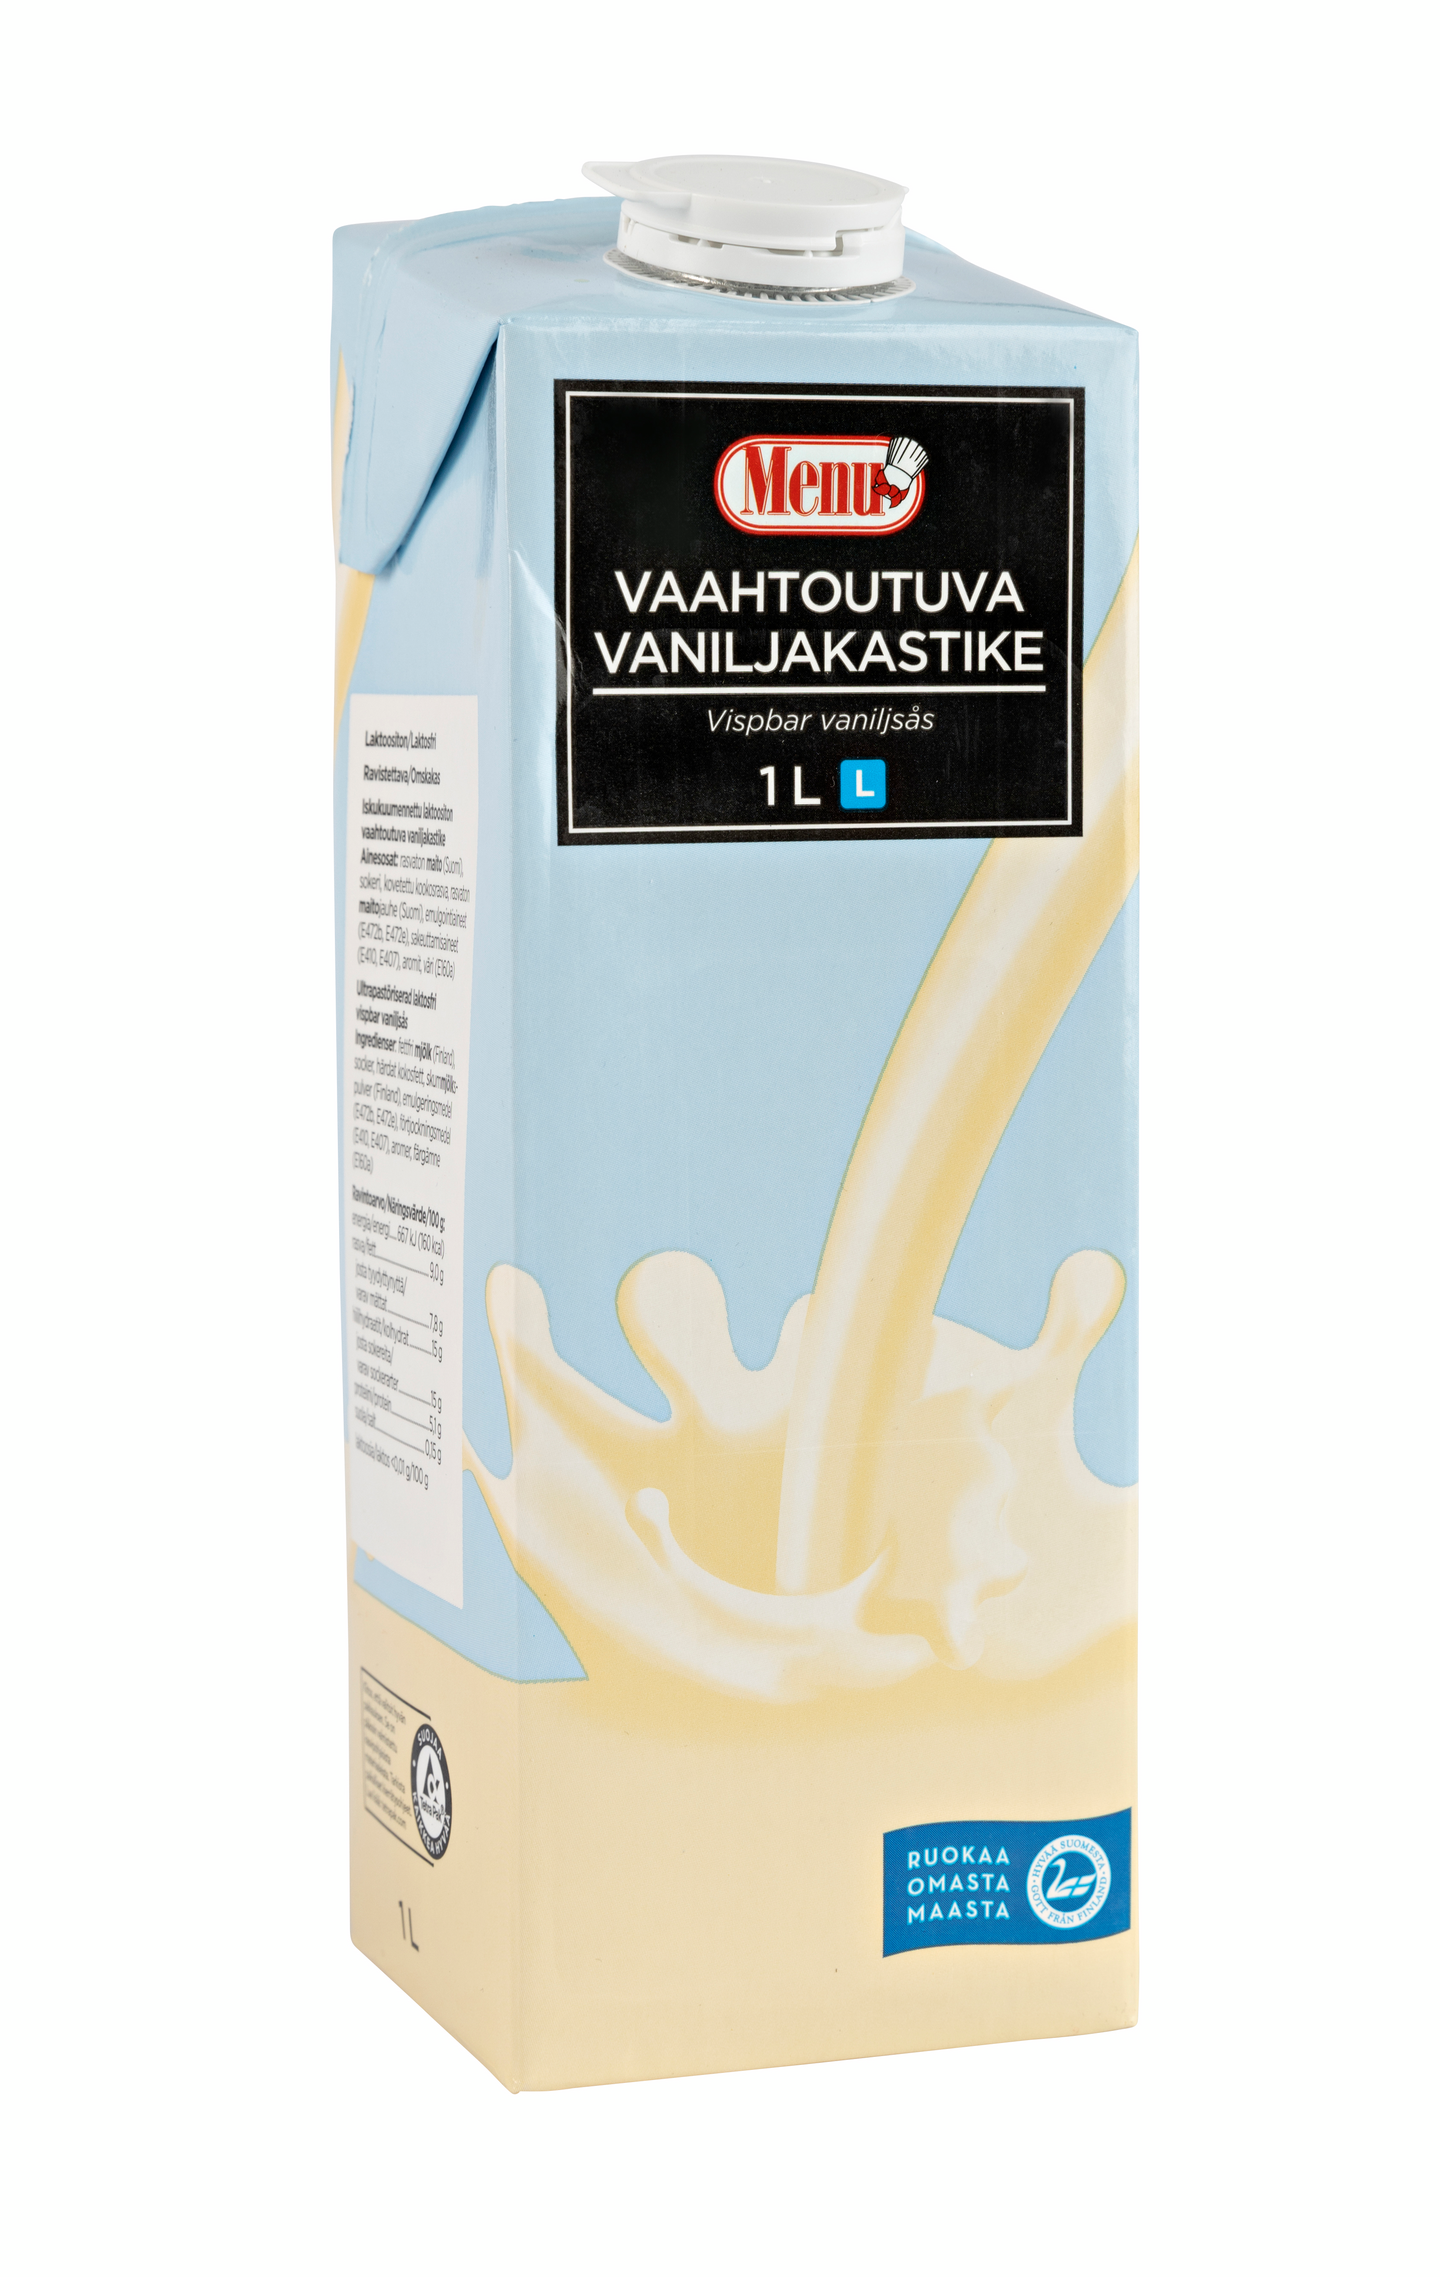 Menu vaahtoutuva vaniljakastike 1l laktoositon